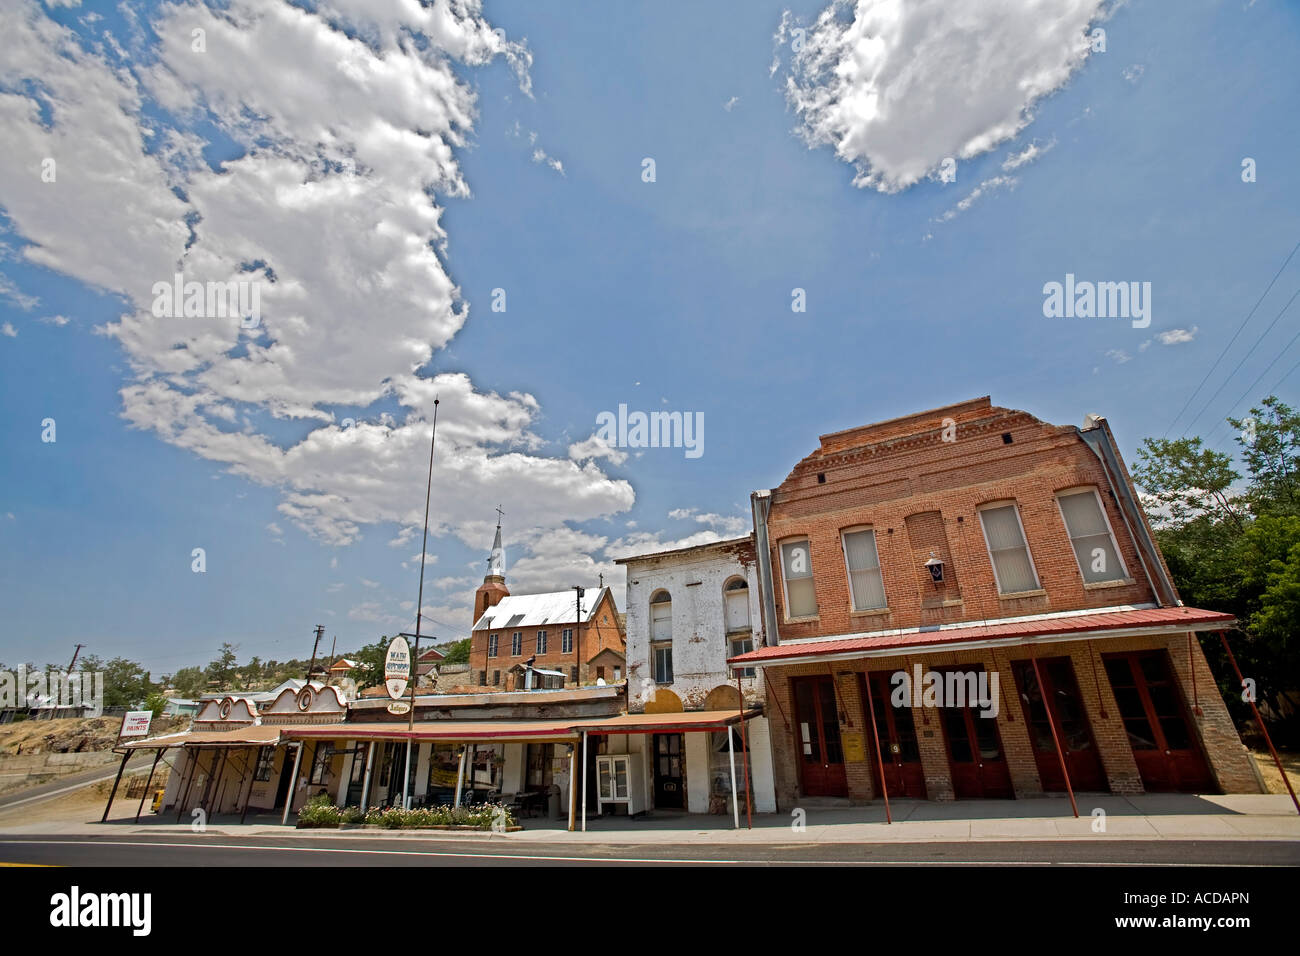 Austin eine Stadt an der Route 50 in Nevada den Spitznamen The Loneliest Road in America Stockfoto